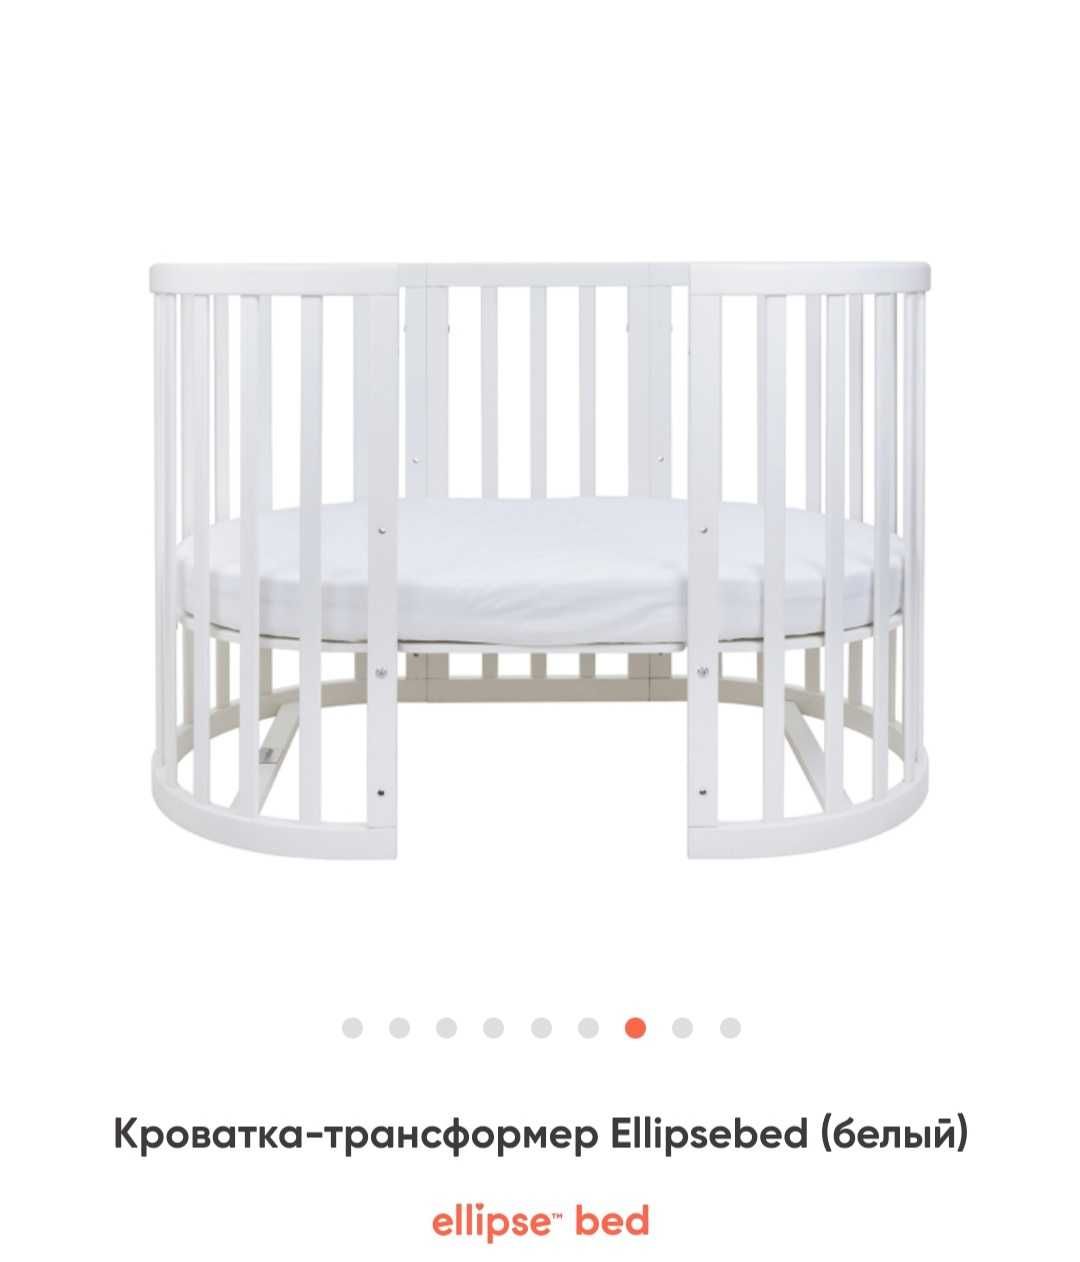 Детская кровать Ellipsebed